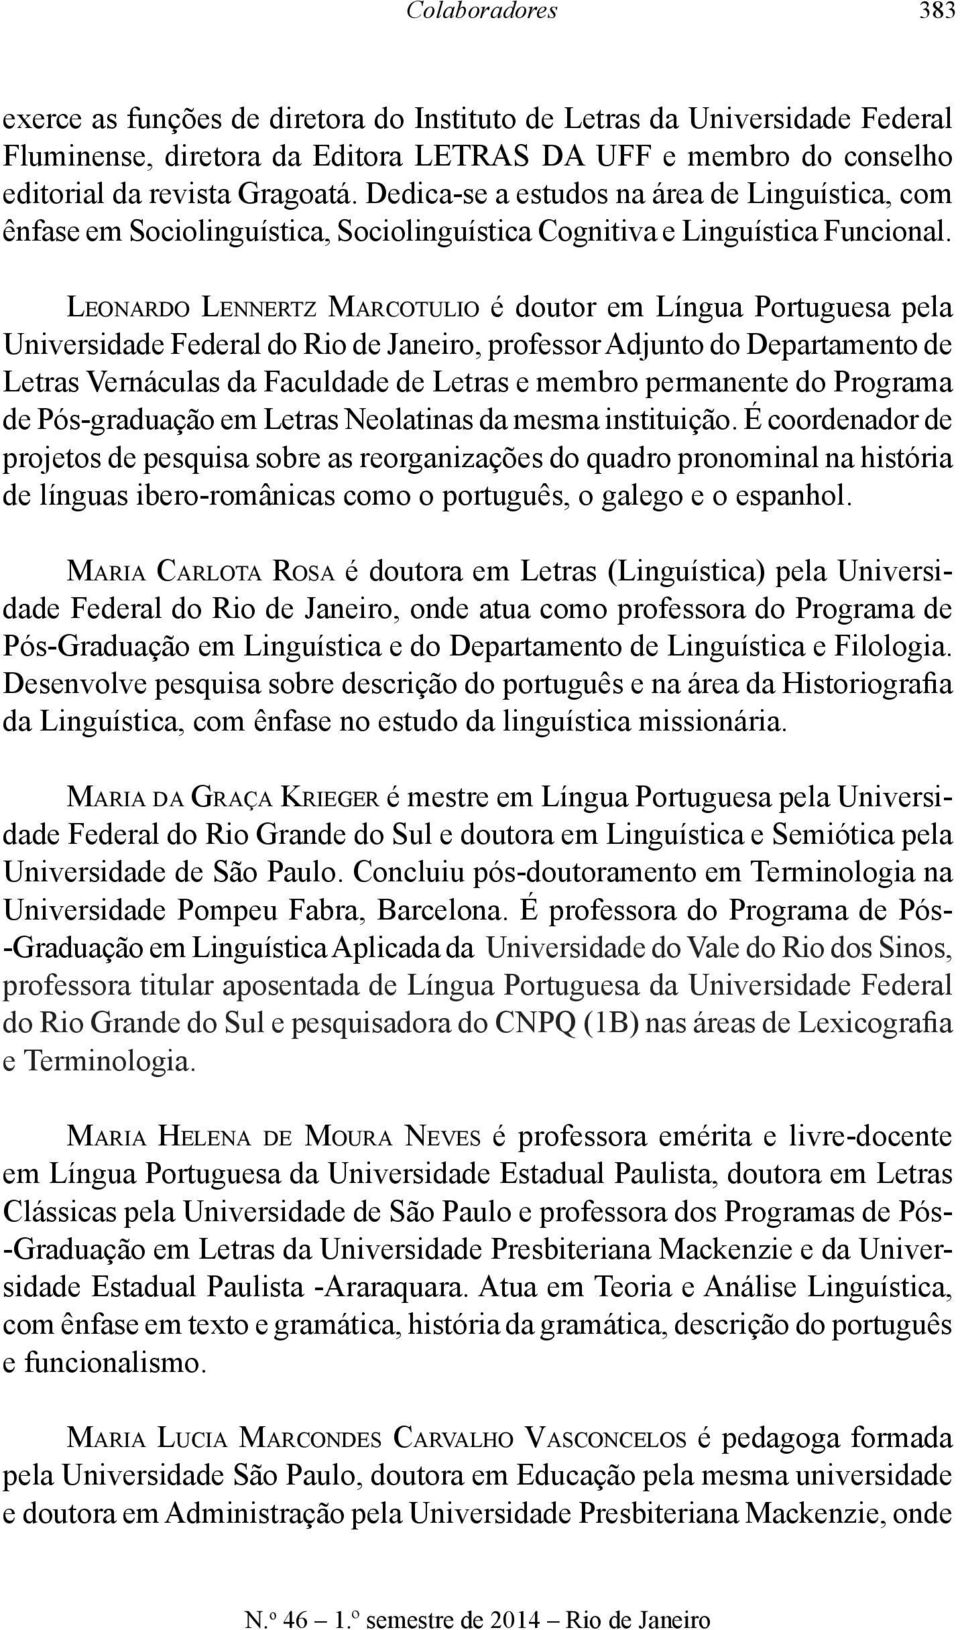 Leonardo Lennertz Marcotulio é doutor em Língua Portuguesa pela Universidade Federal do Rio de Janeiro, professor Adjunto do Departamento de Letras Vernáculas da Faculdade de Letras e membro